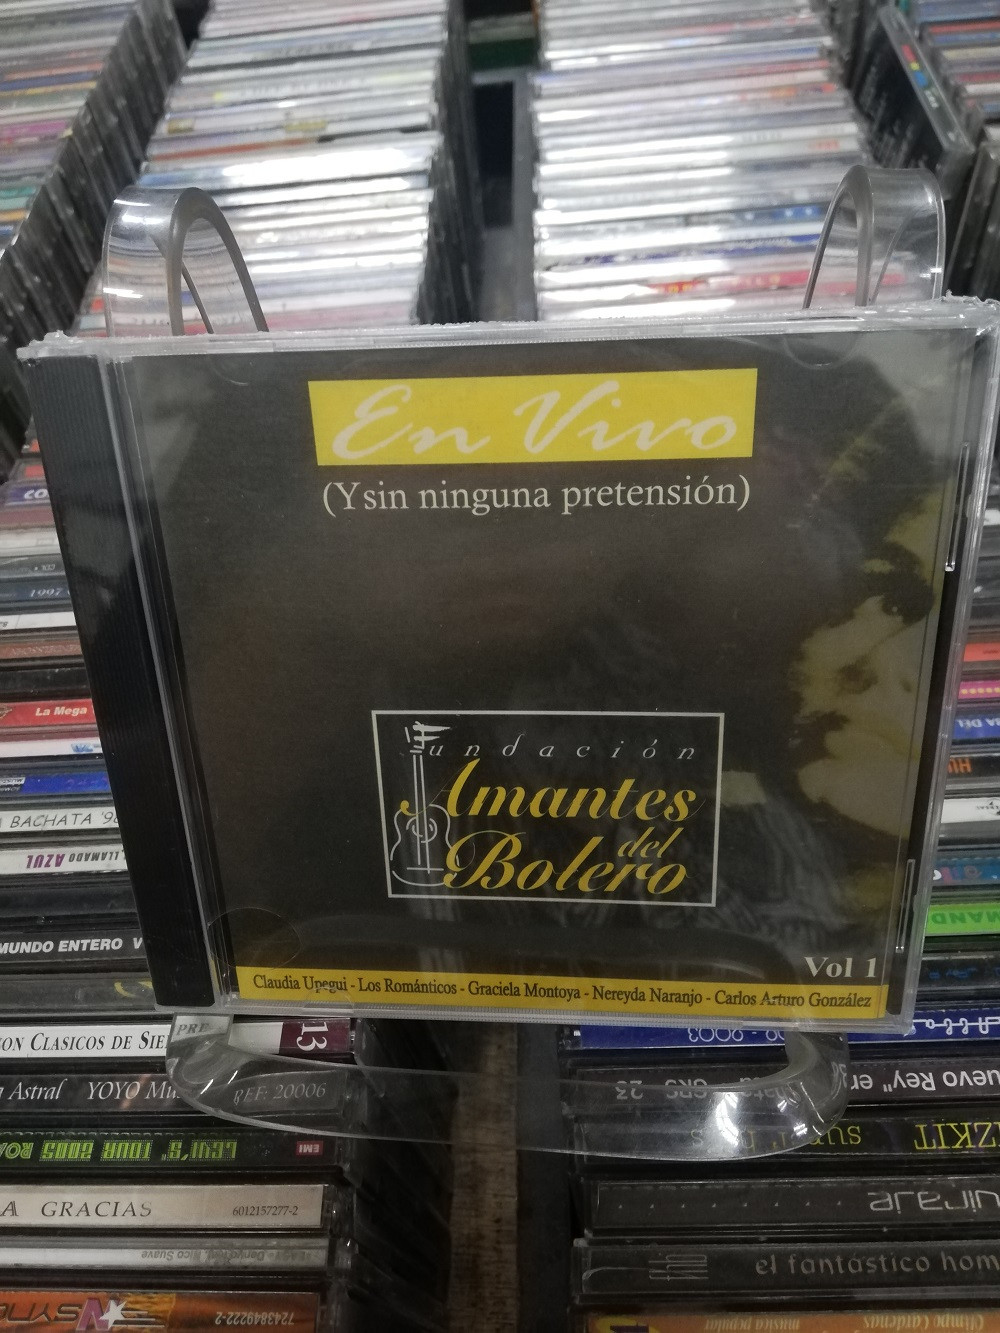 Imagen CD LA NOCHE DE LOS AMANTES DEL BOLERO VOL. 1